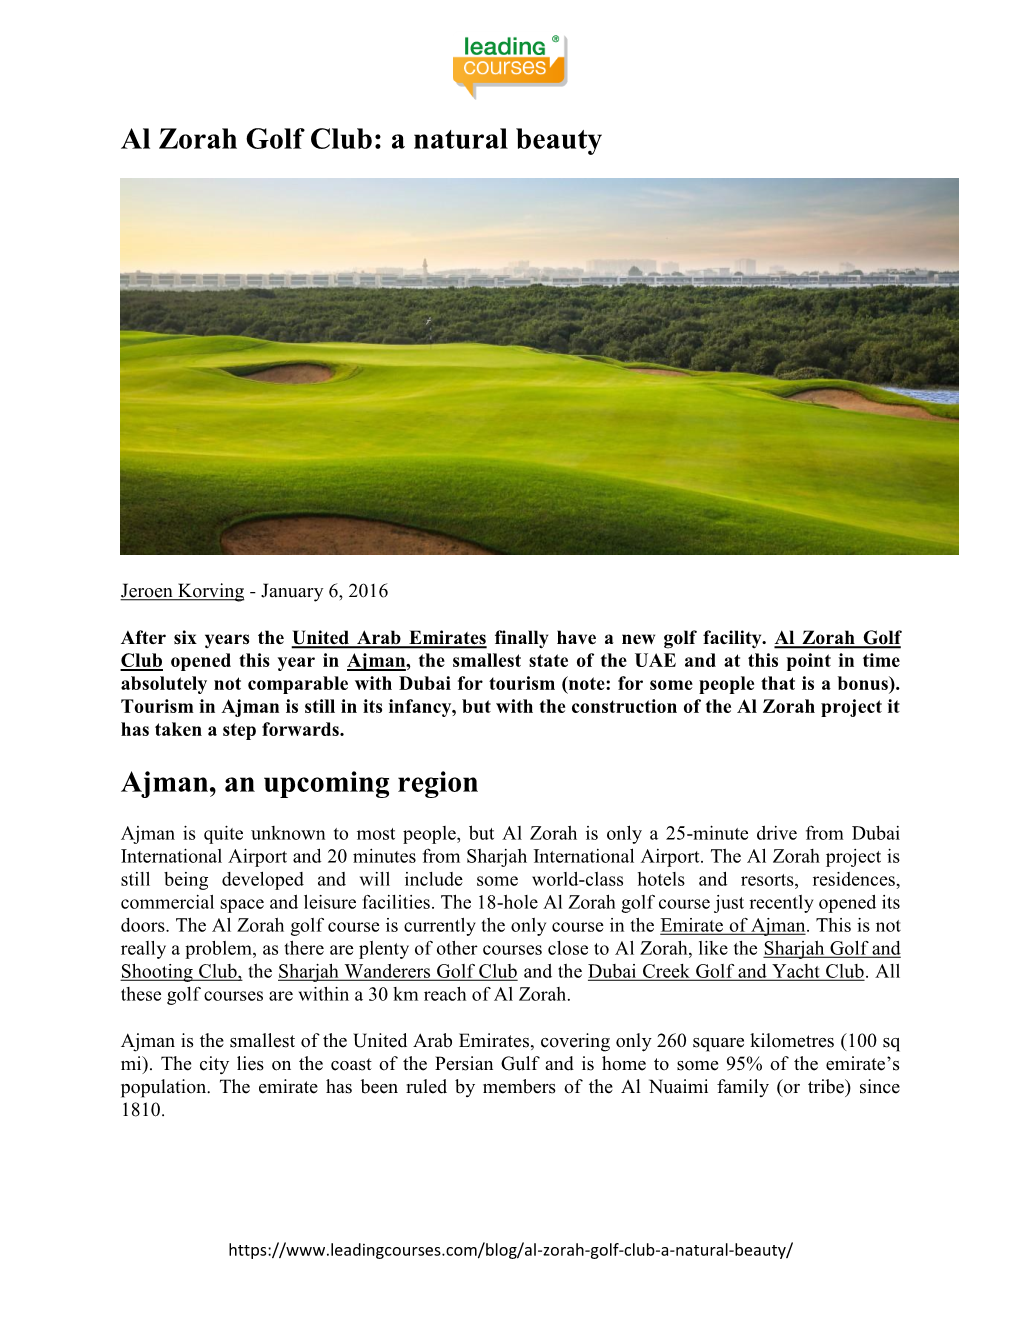 Al Zorah Golf Club: a Natural Beauty